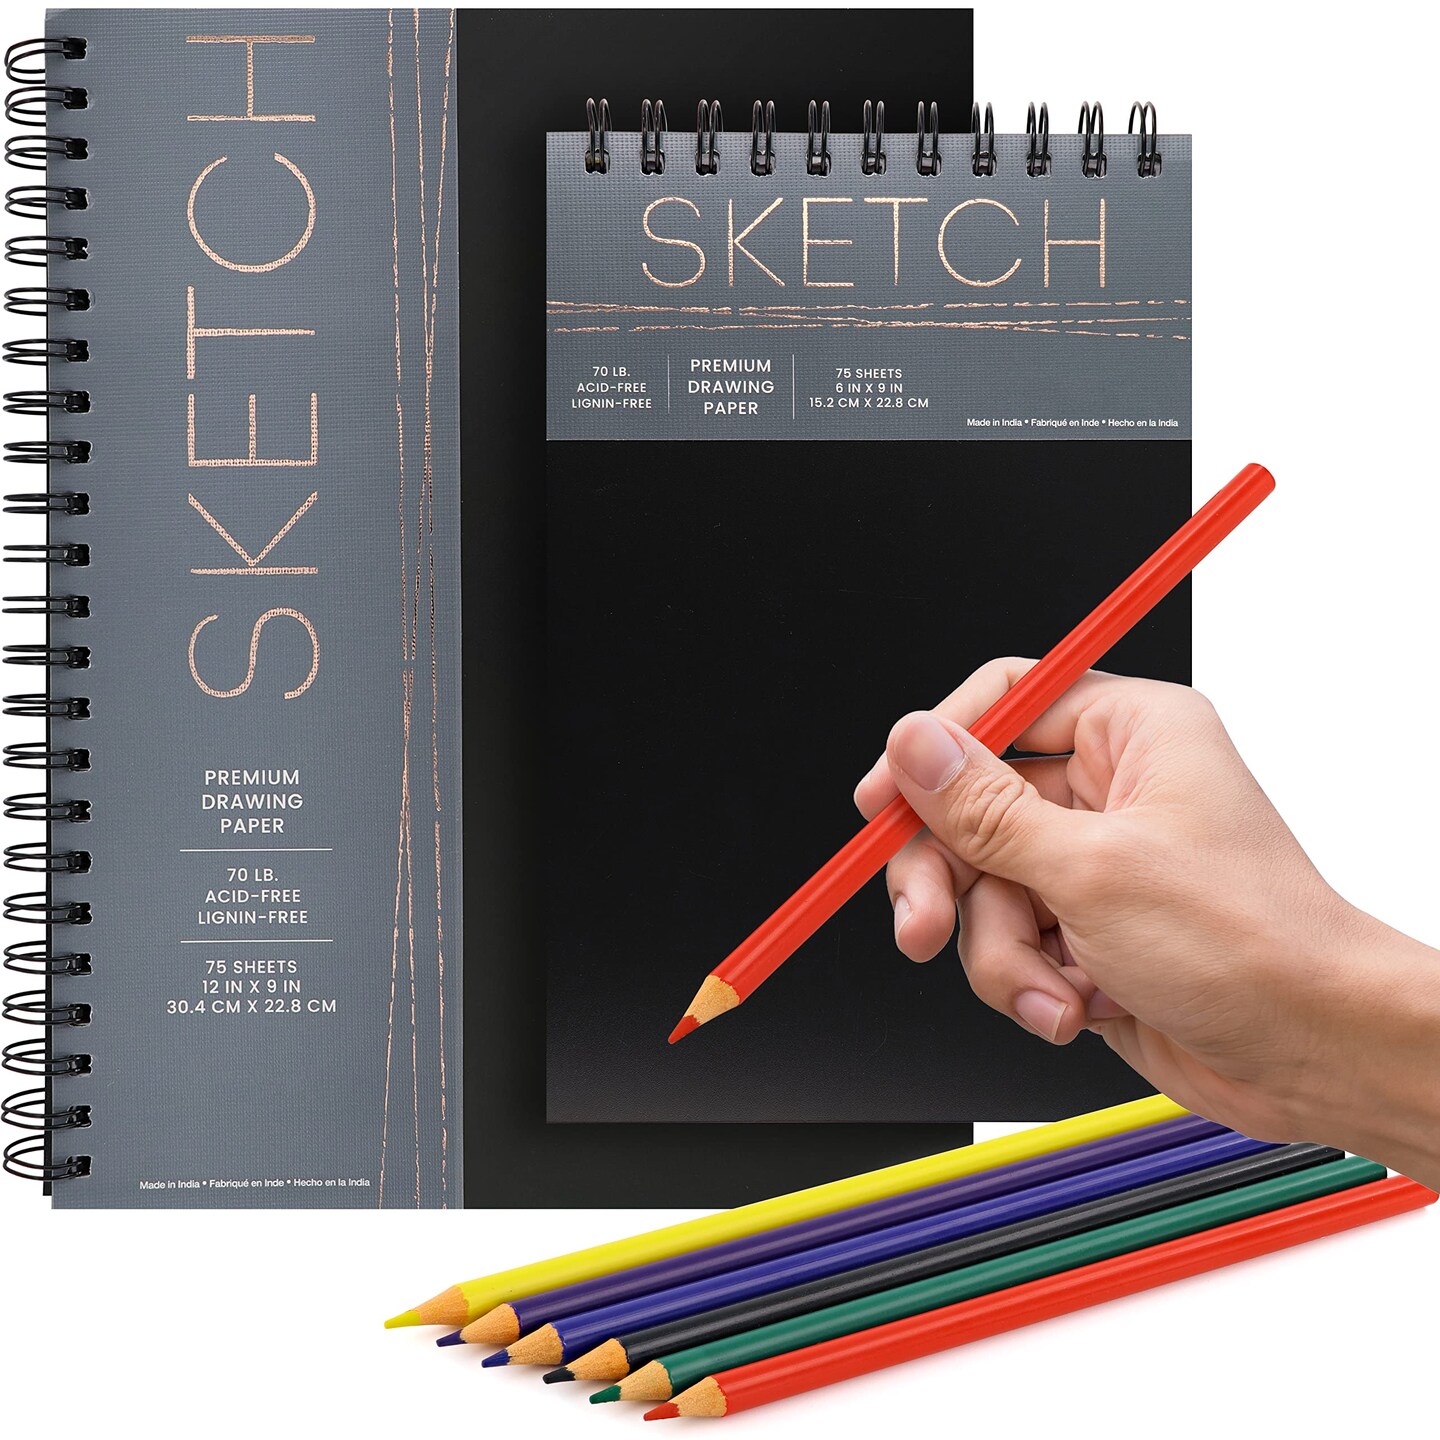 sketch artist premium drawing set w/ sketchbook